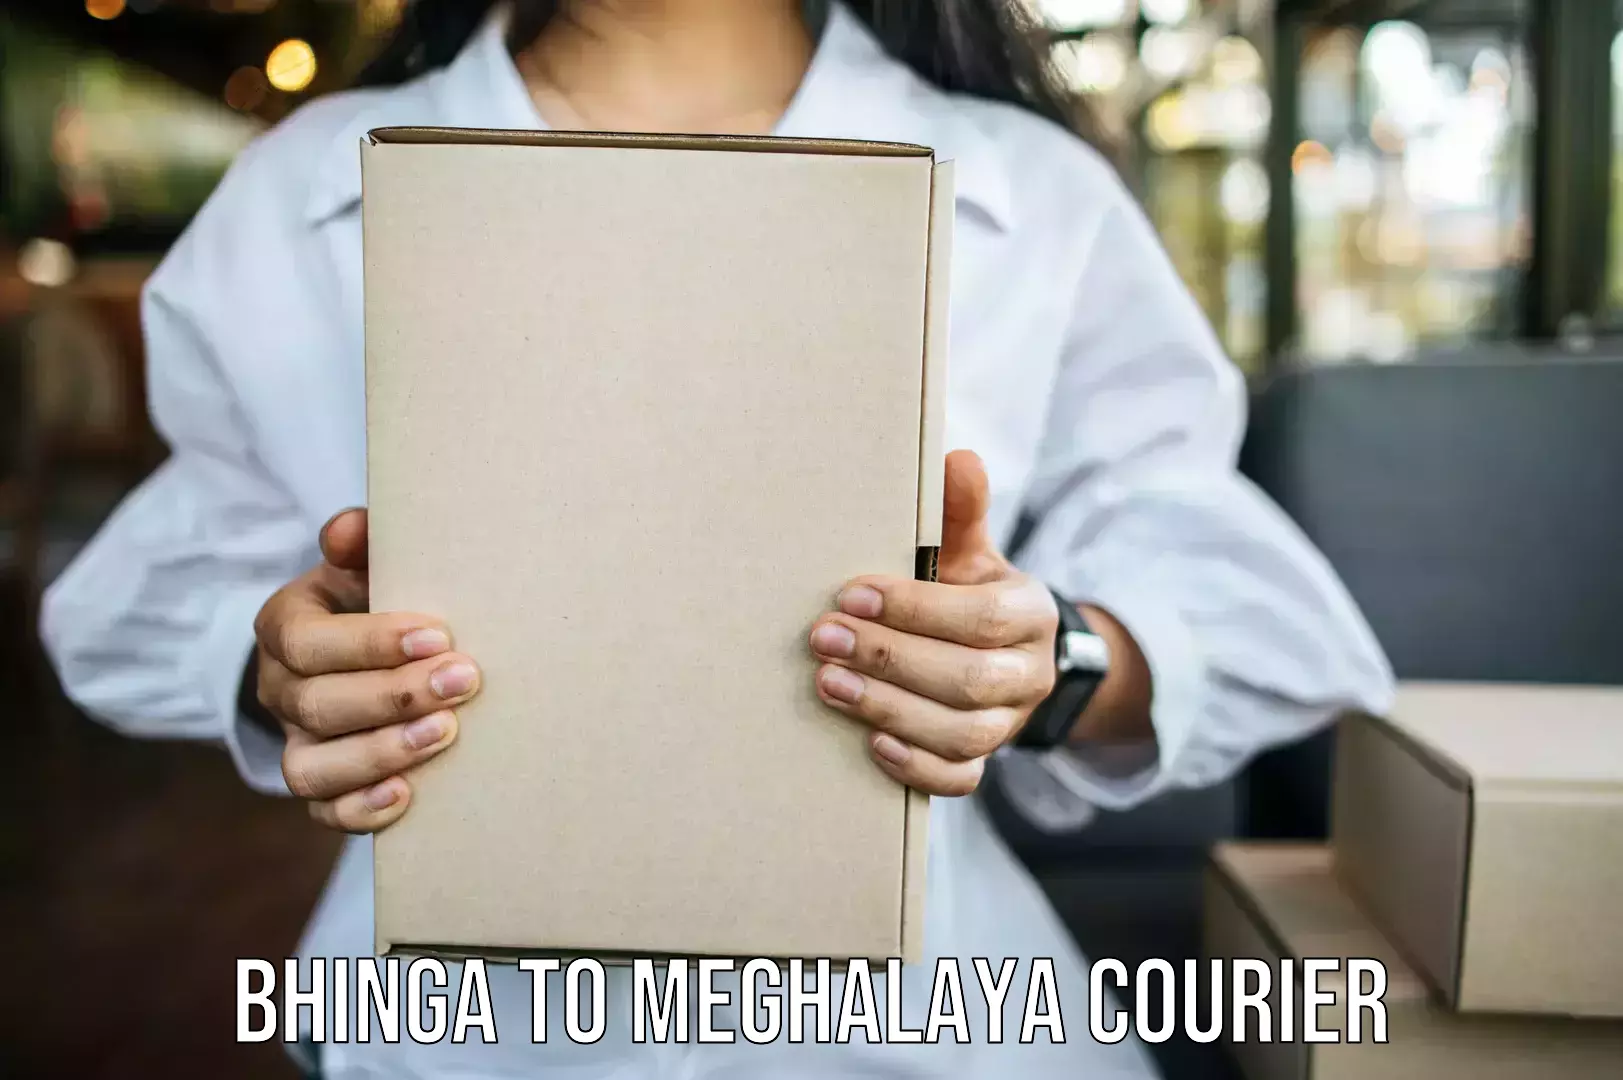 Specialized moving company Bhinga to Meghalaya